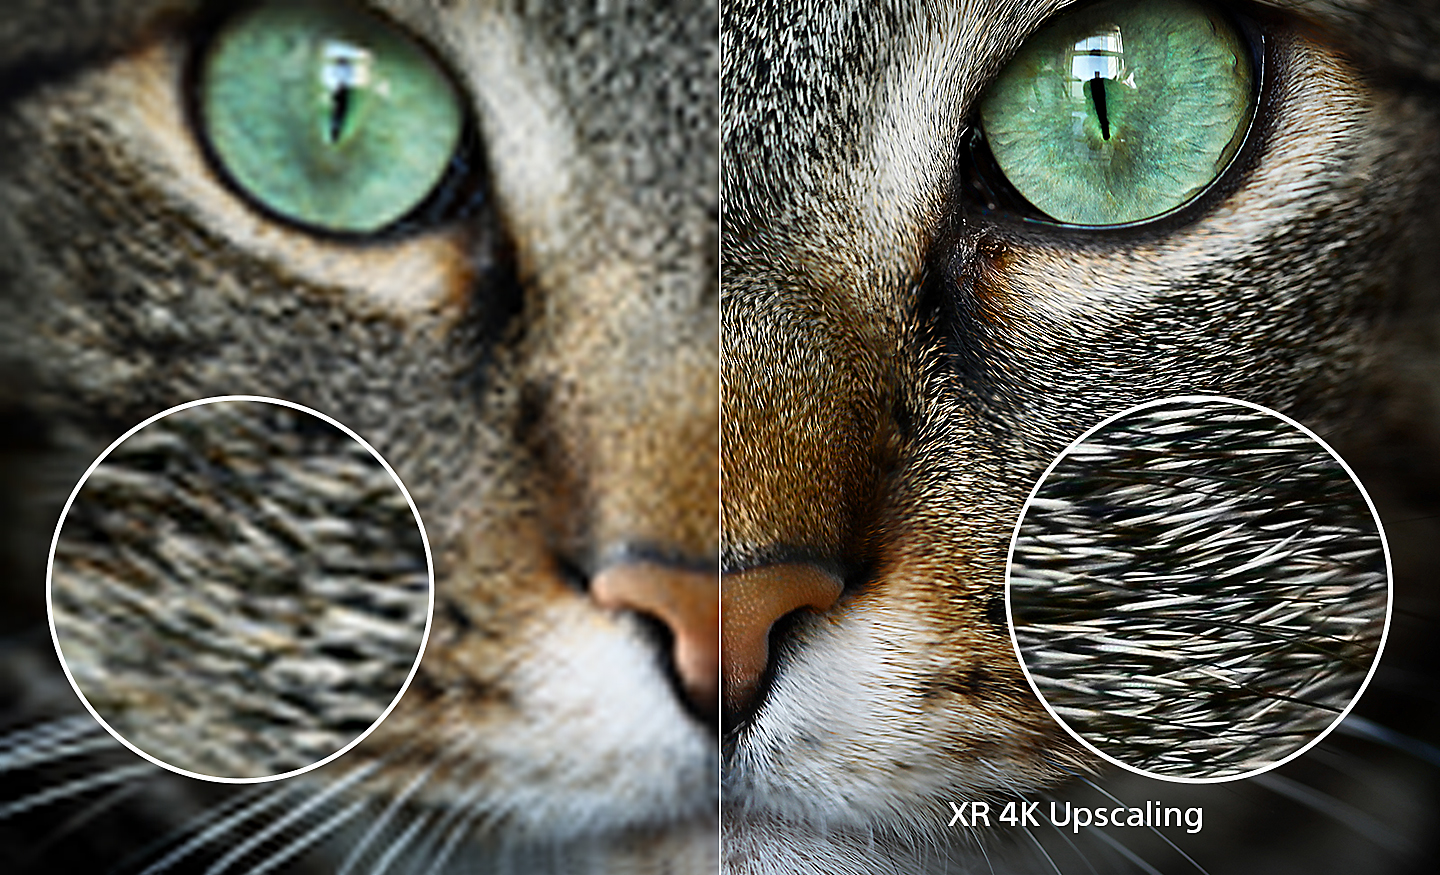 شاشة منقسمة لرأس قطة حيث يعرض الجانب الأيمن التفاصيل الإضافية بعد تطبيق تقنية XR 4K Upscaling